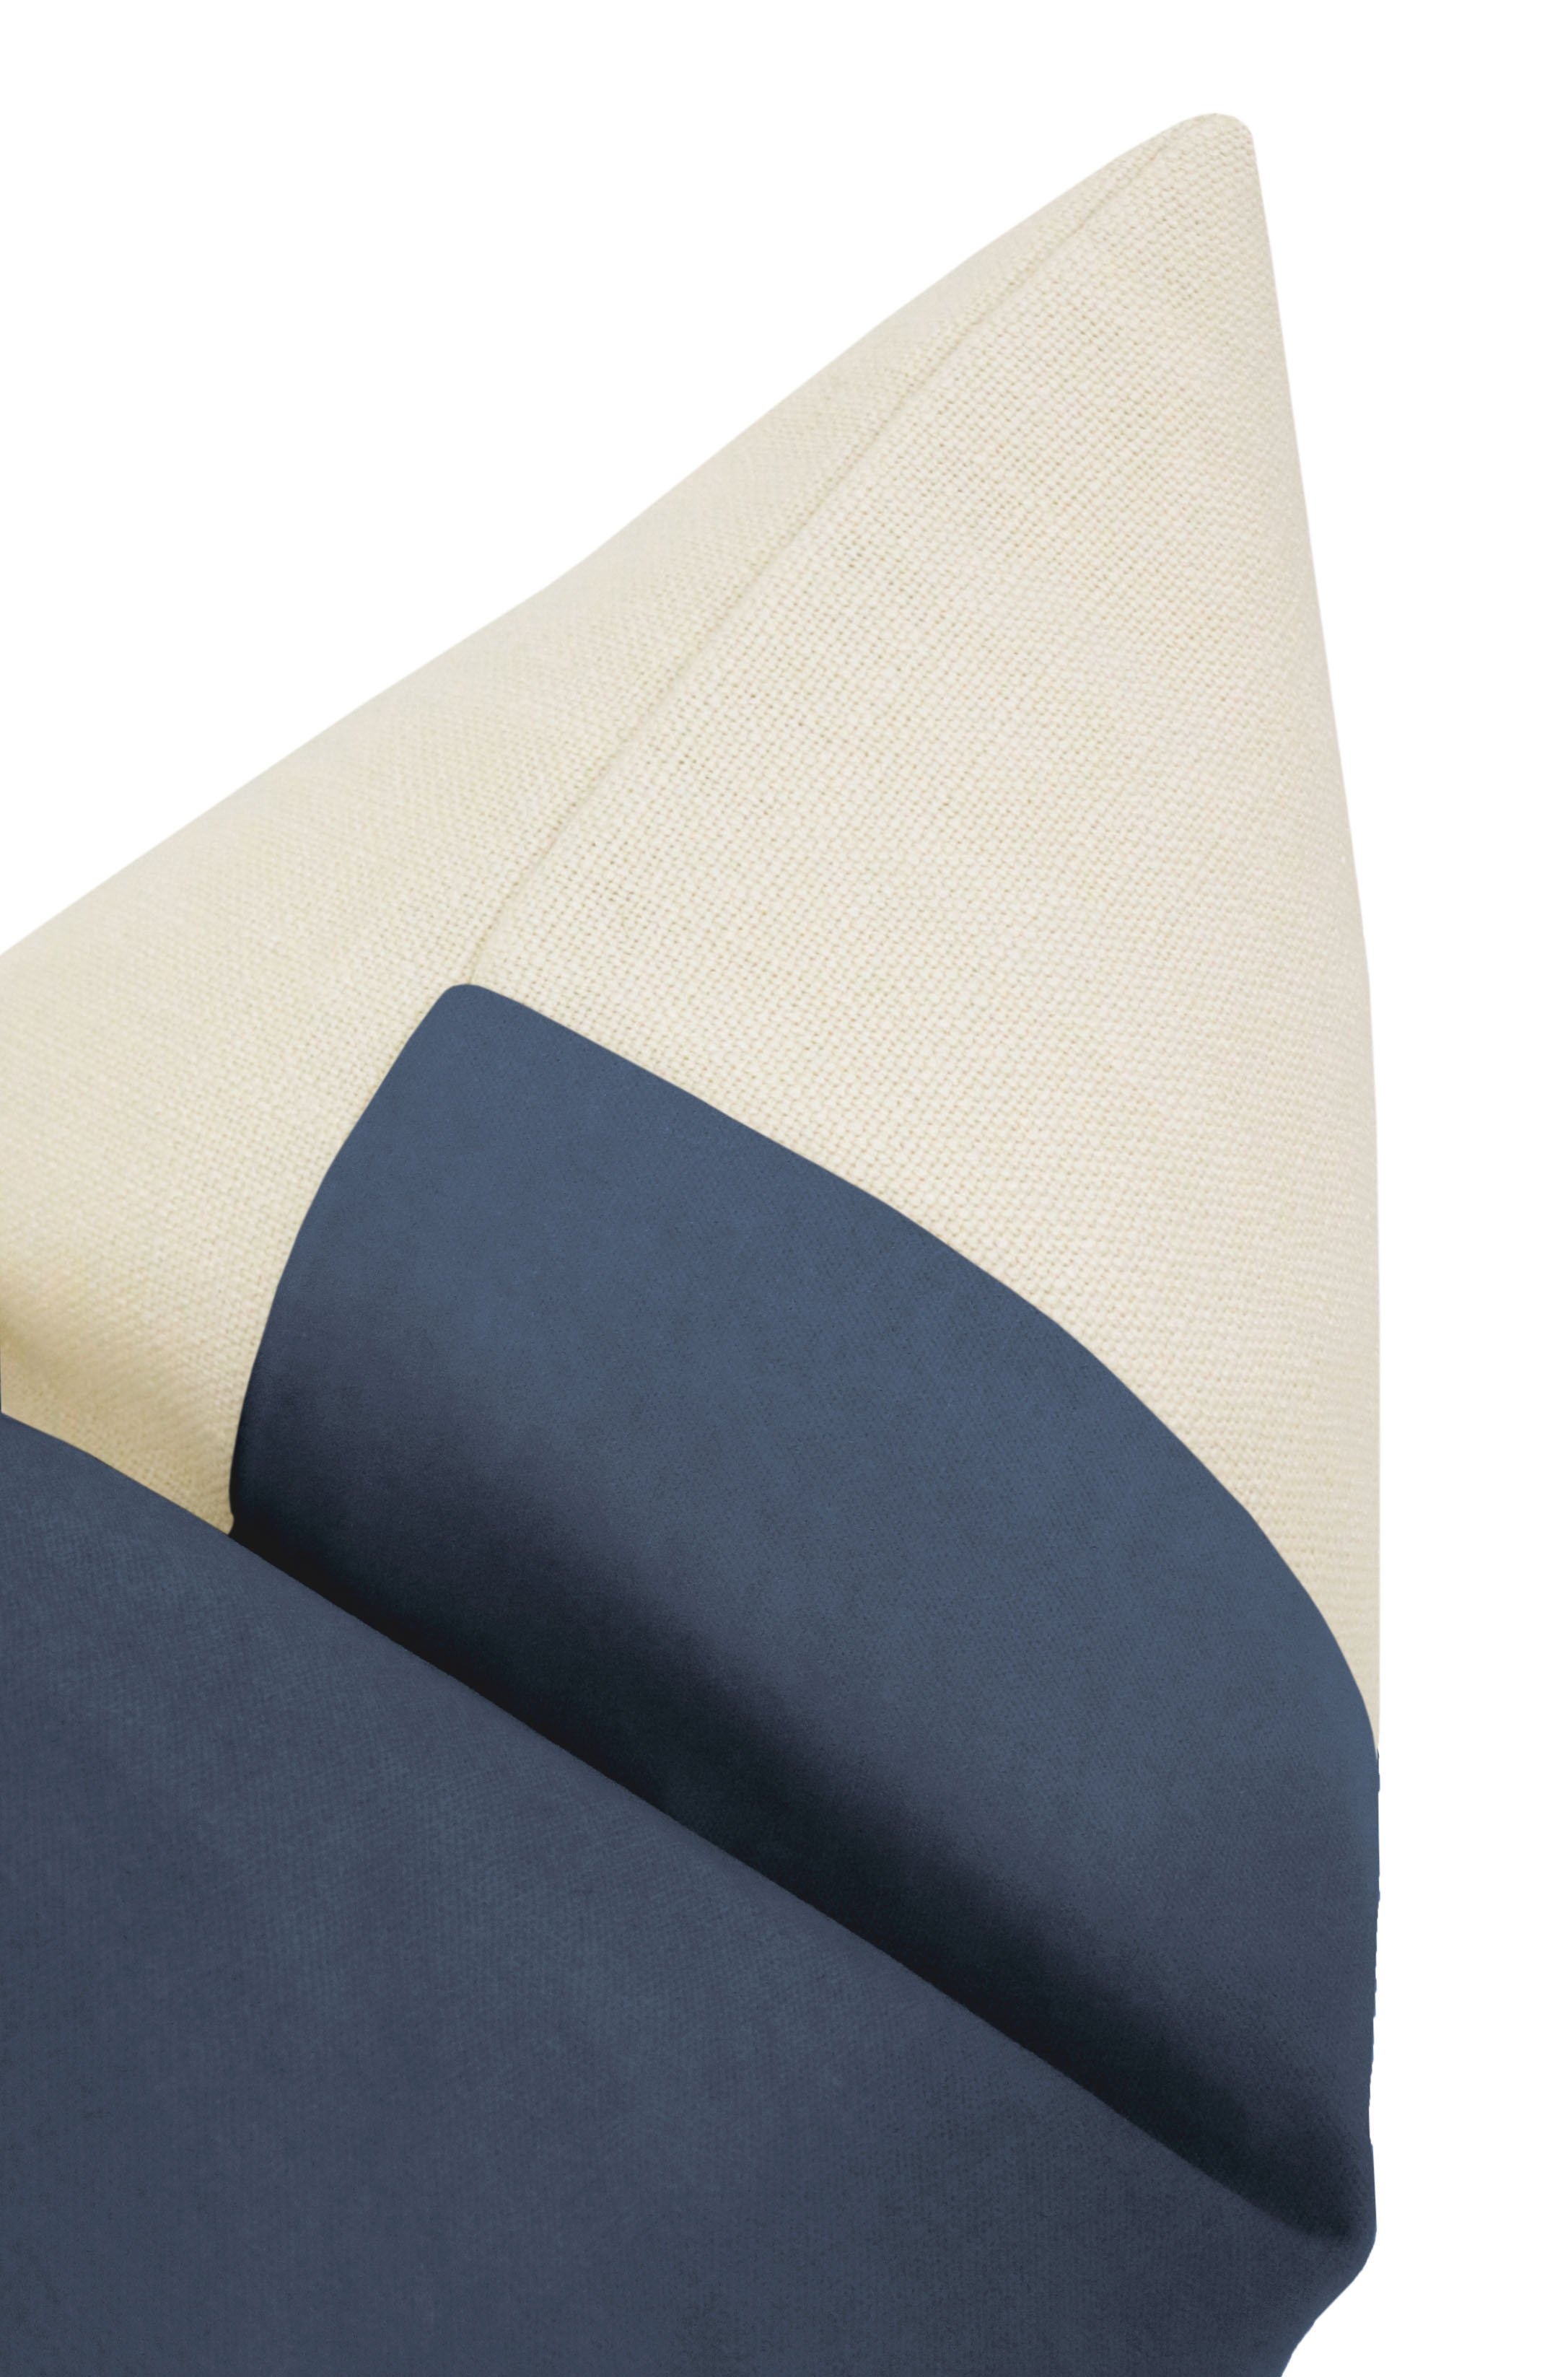 Classic Velvet Pillow Cover, Capri Blue, 20" x 20" - Image 1